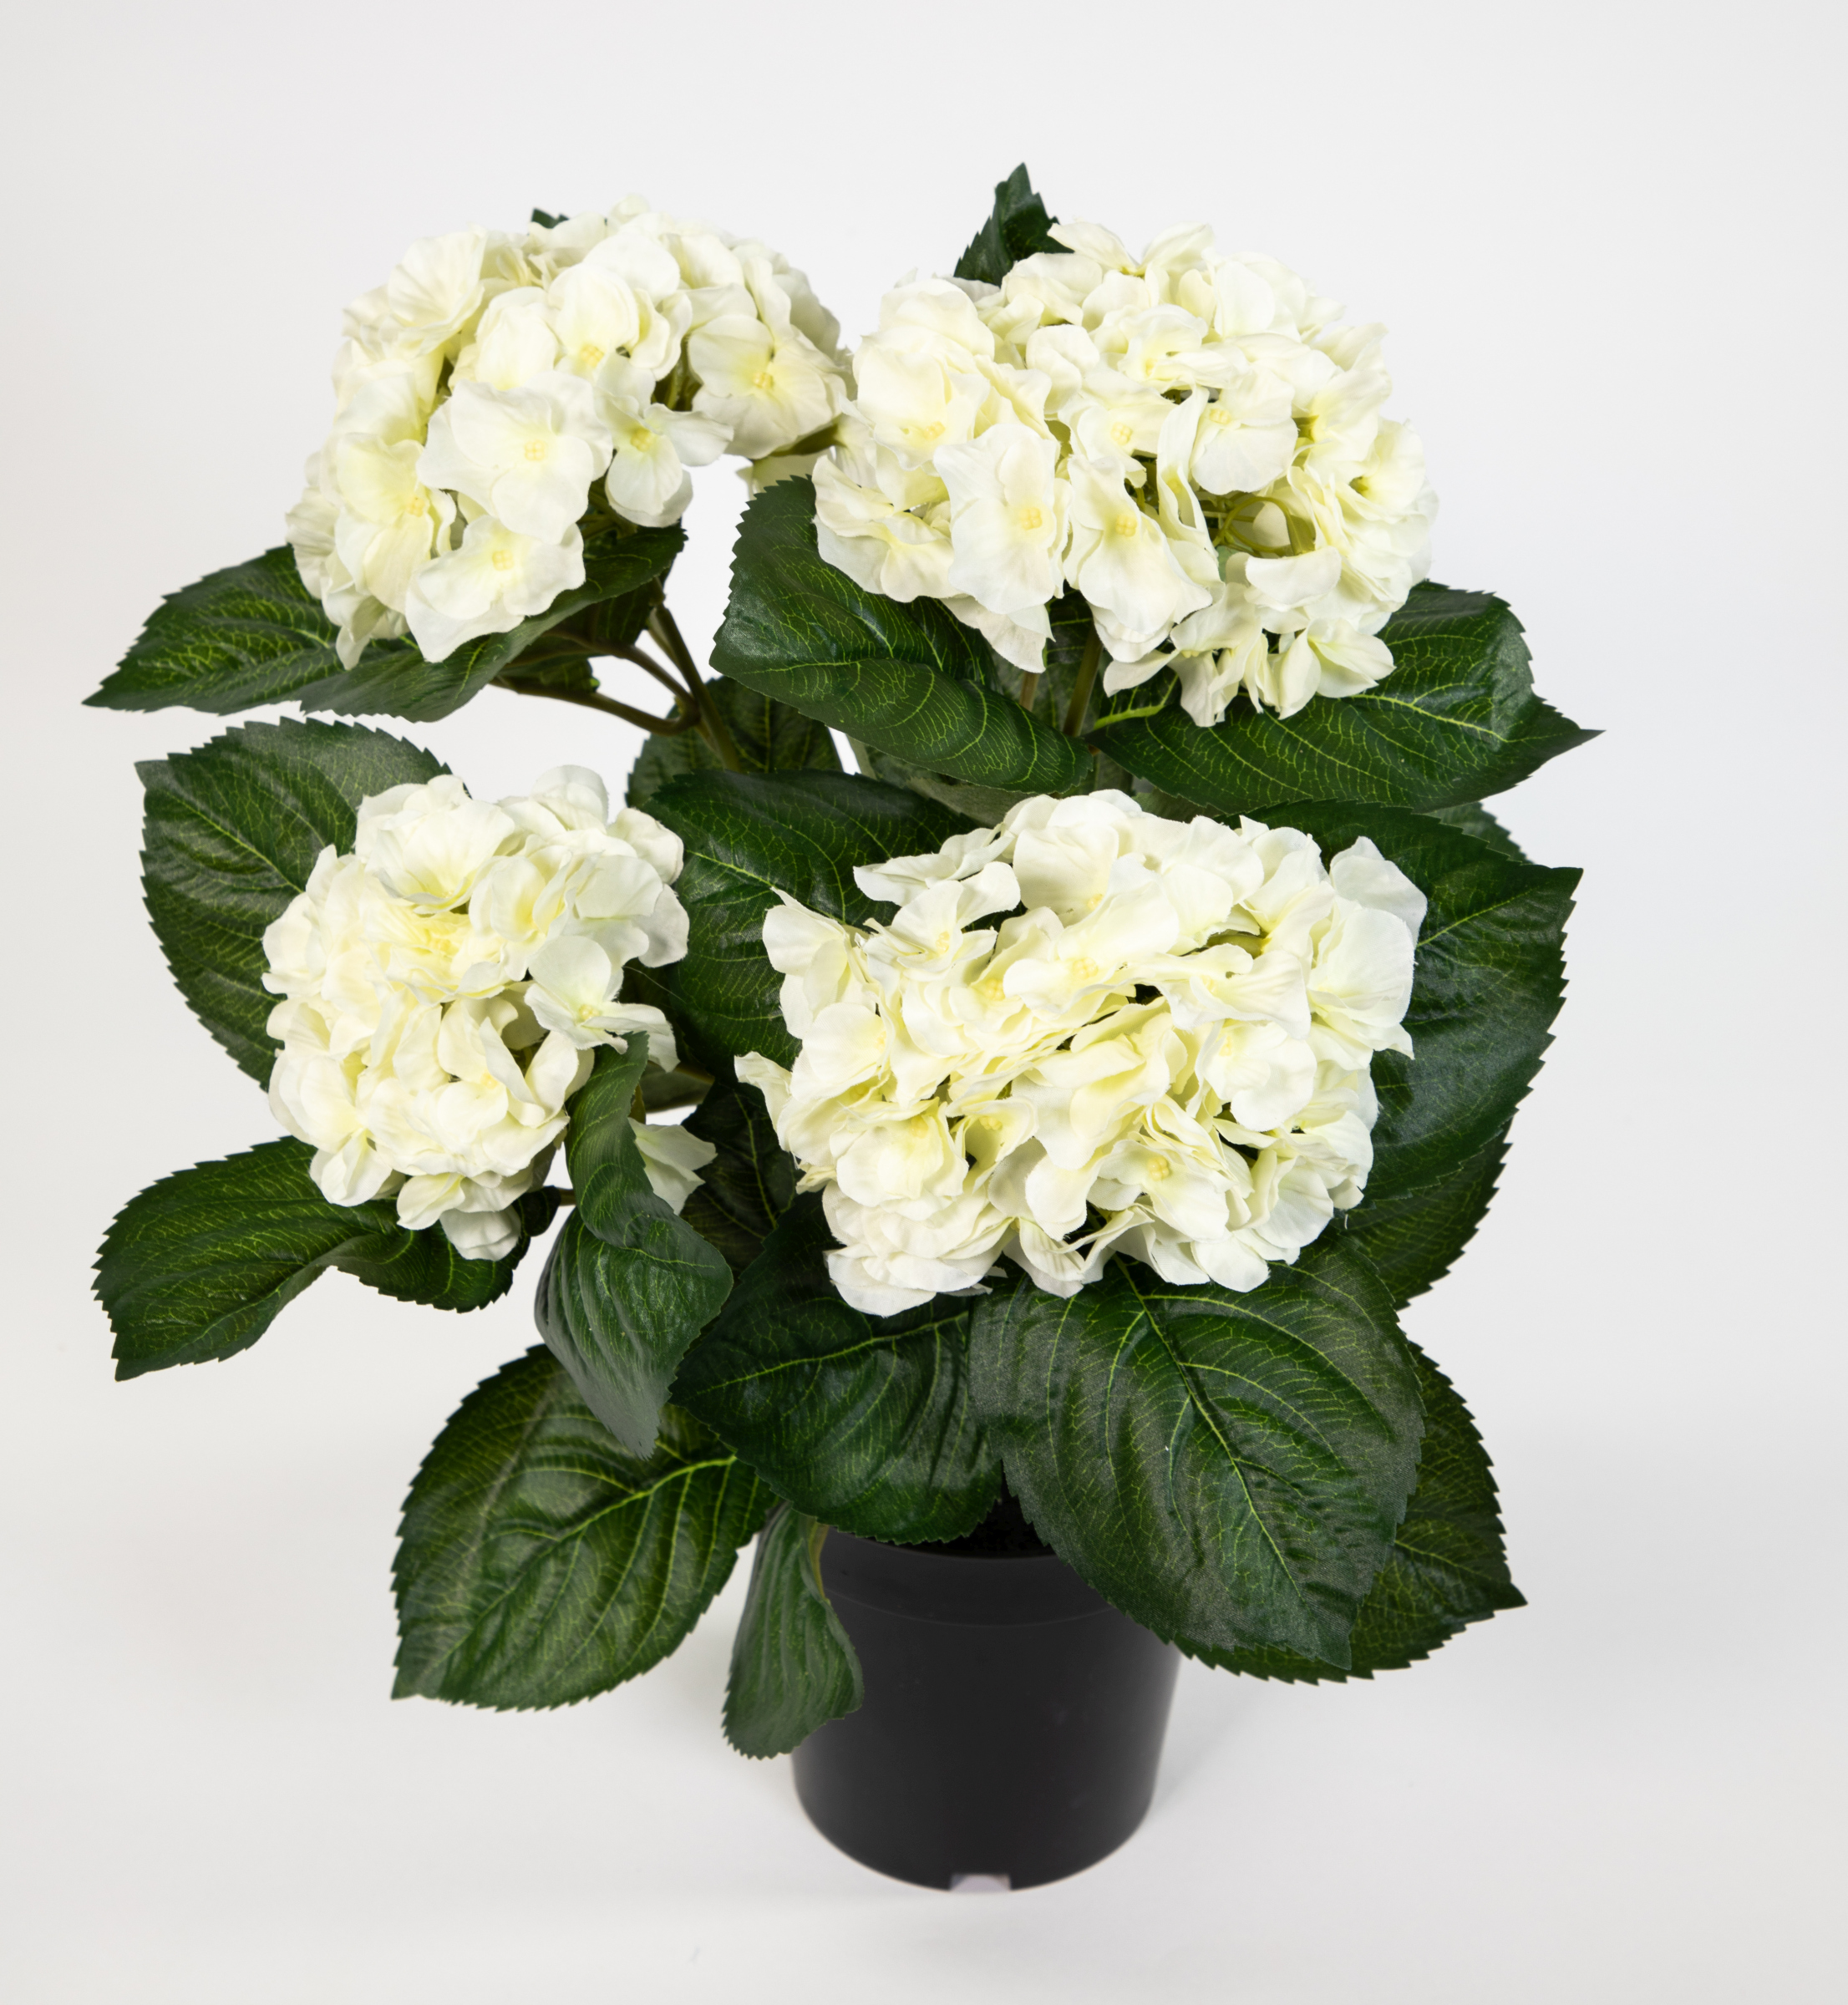 Kunstpflanzen Deluxe Blumen künstliche Topf Hortensie im 42cm weiß-creme LM Pflanzen Hortensienbusch